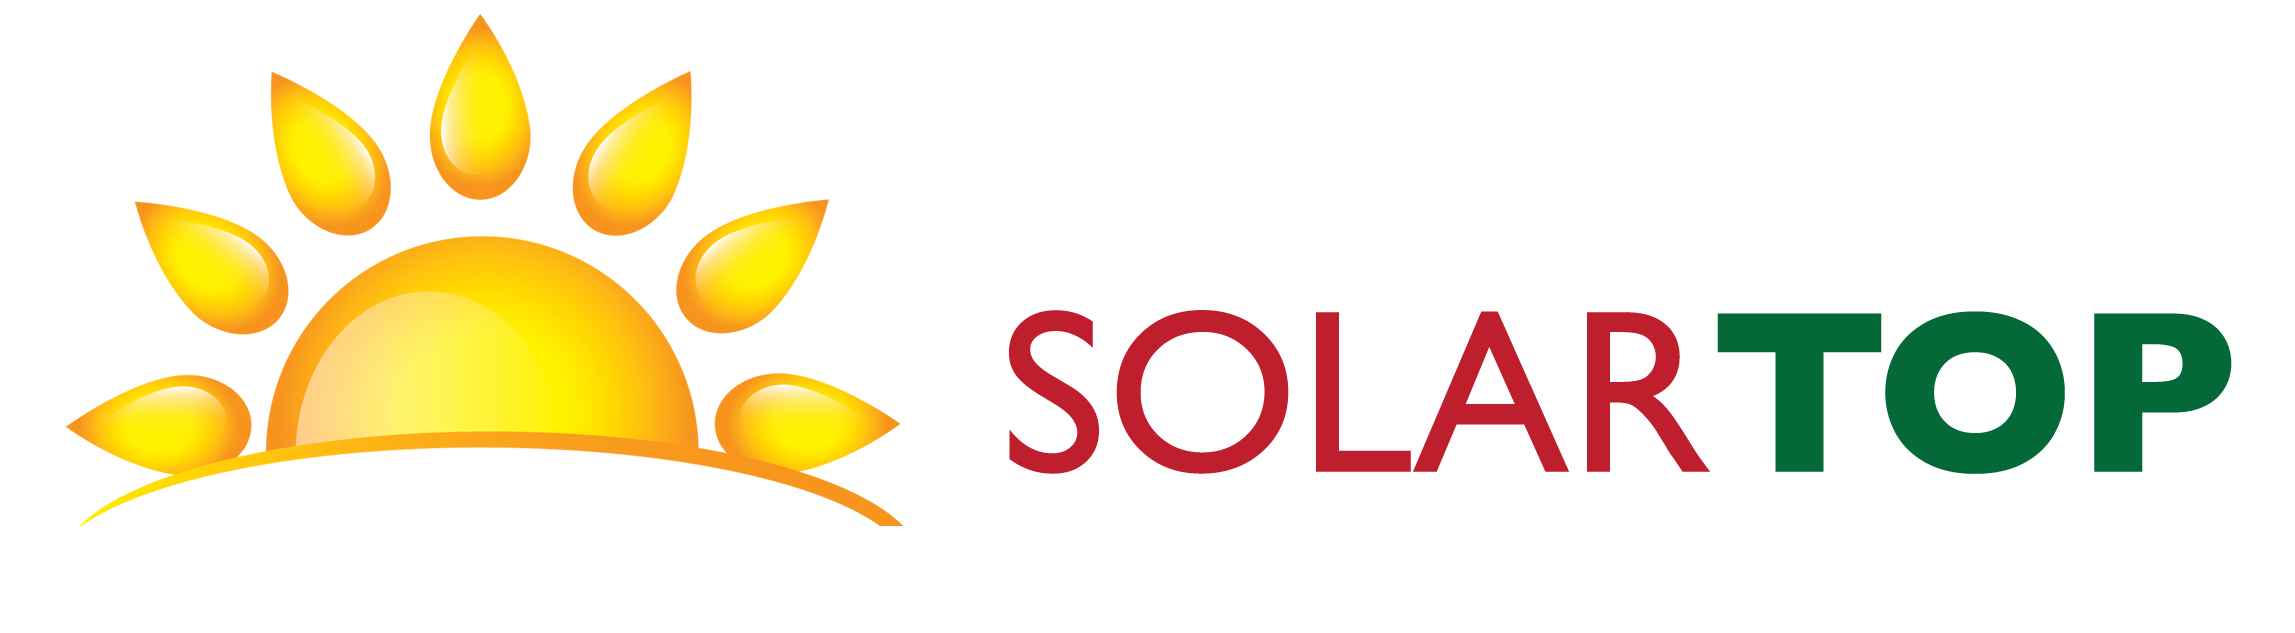 solartop.pl | Instalacje fotowoltaiczne | Sklep Online